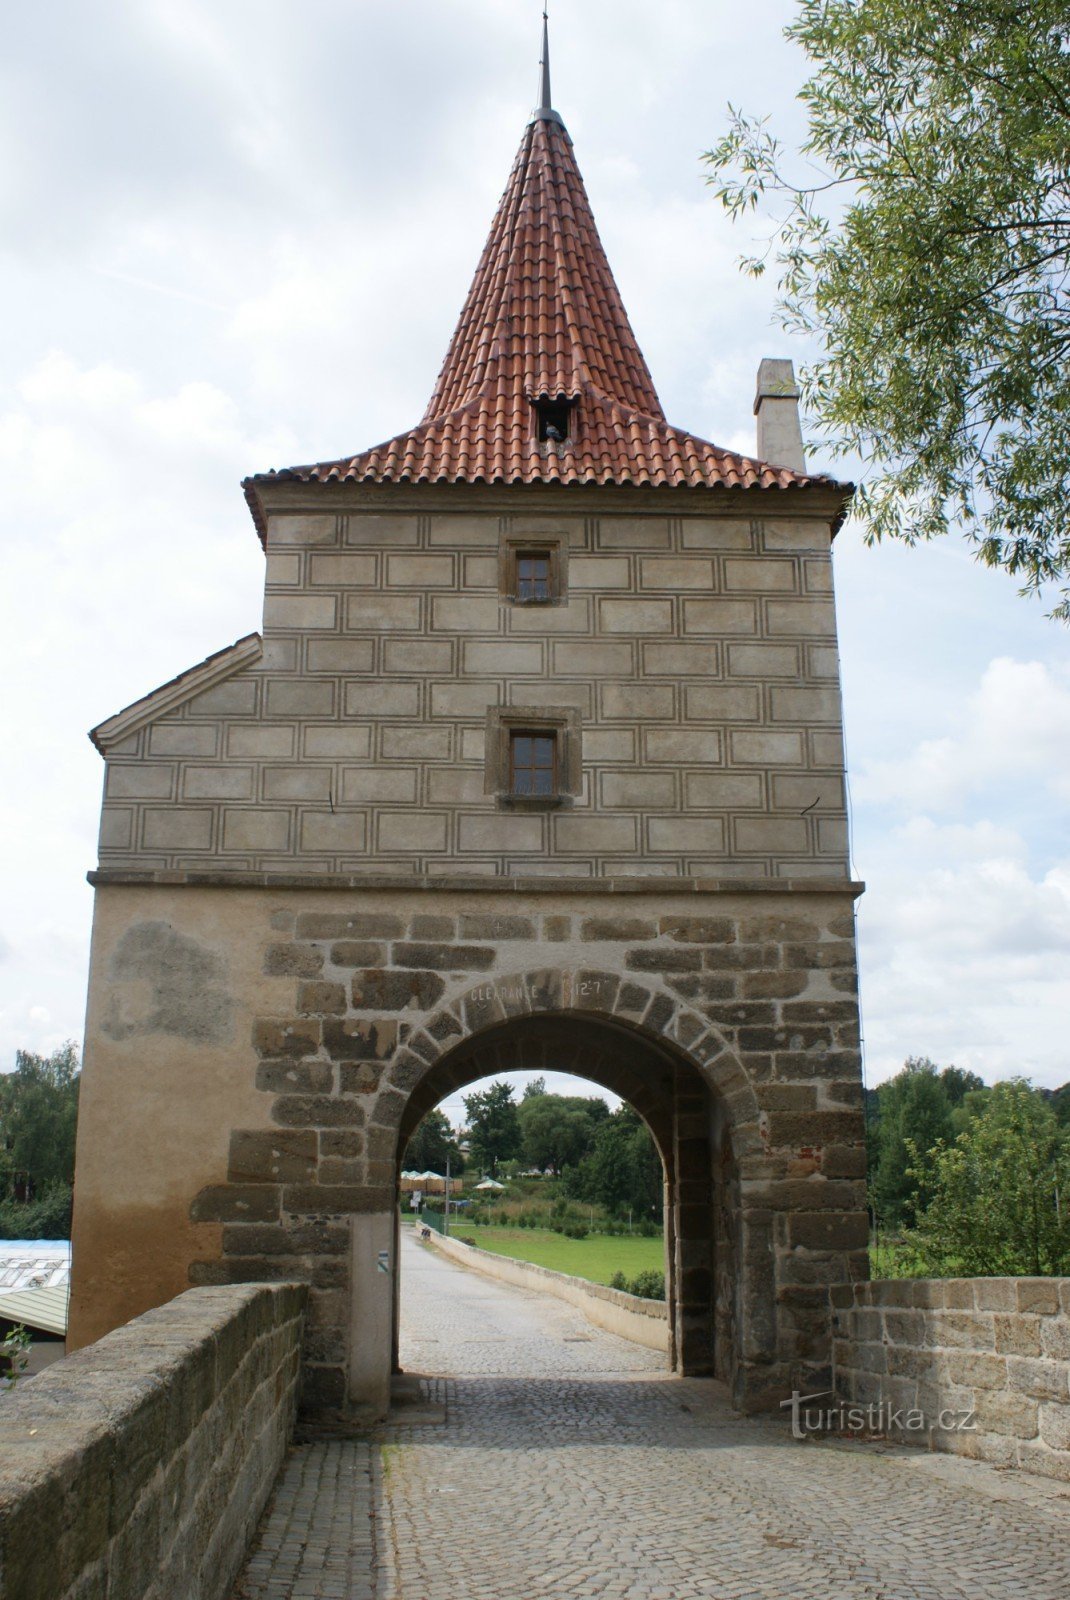 Srebrno – kamienny most z bramą mostową